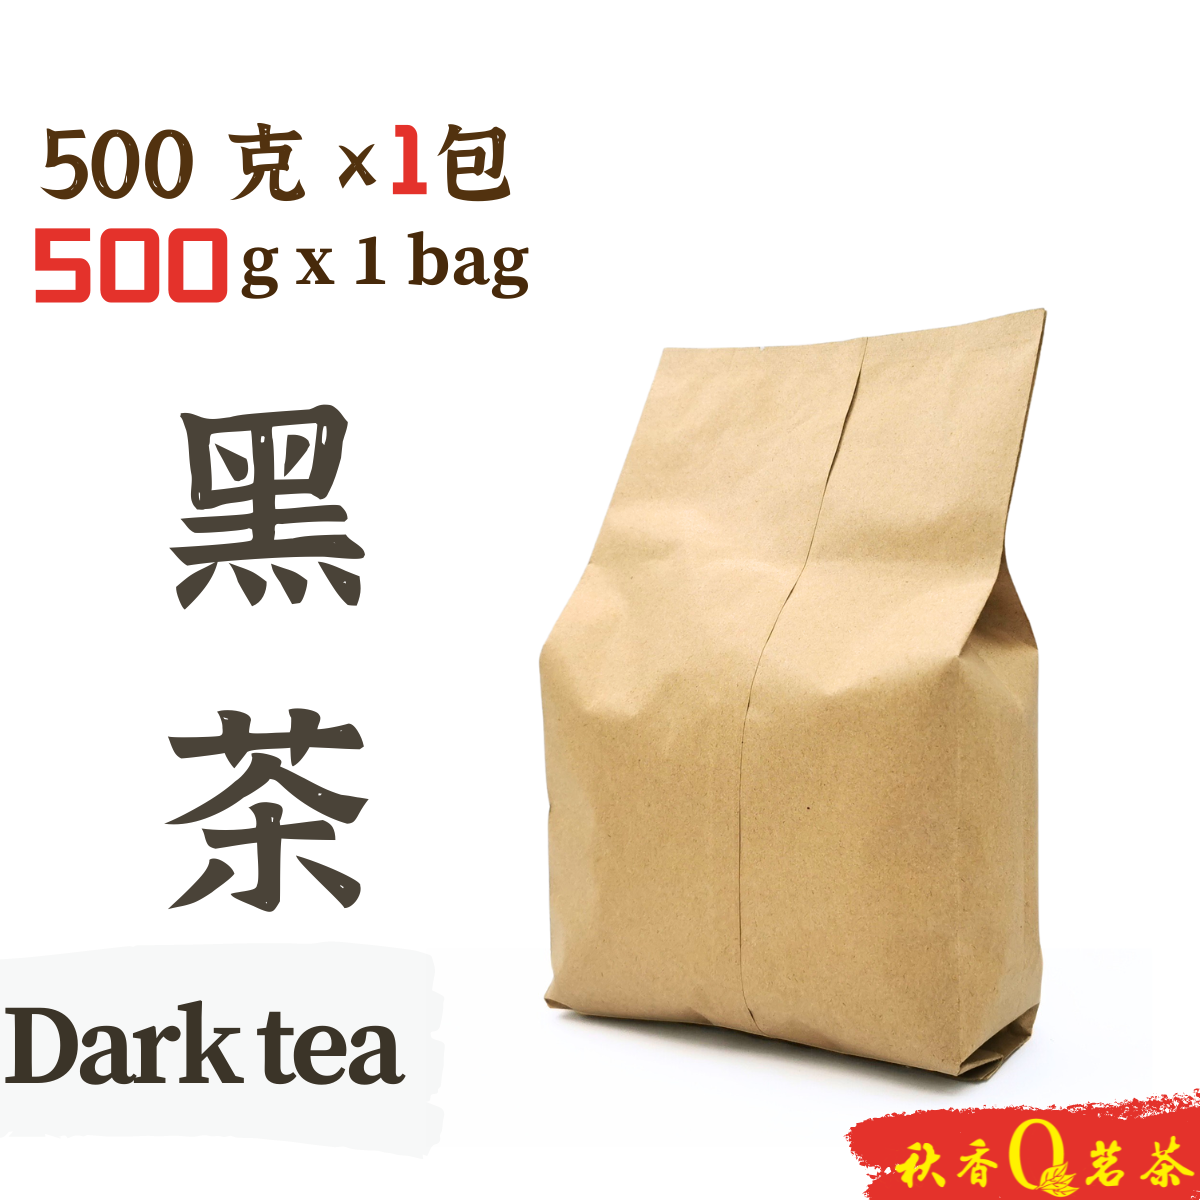 黑茶 Dark tea 【500g】